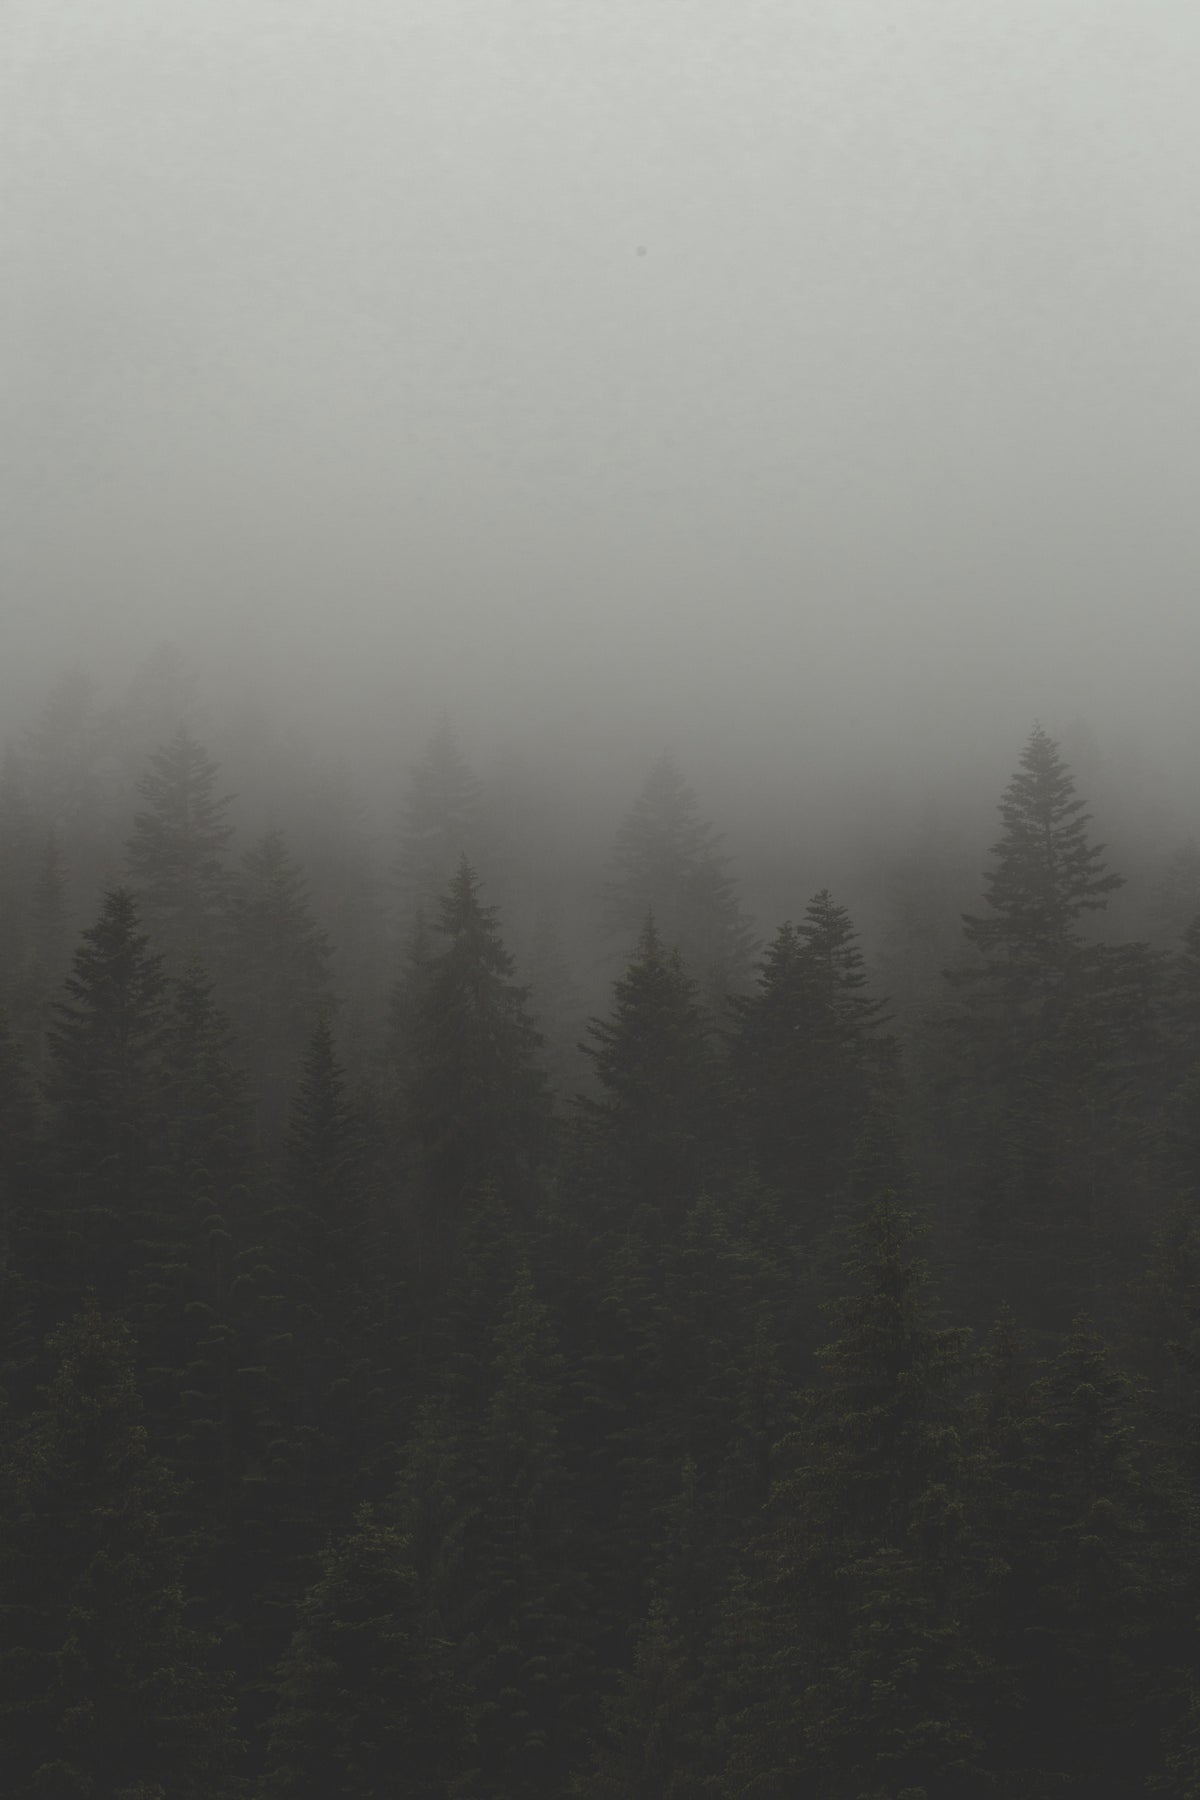 雾和薄雾笼罩着树林